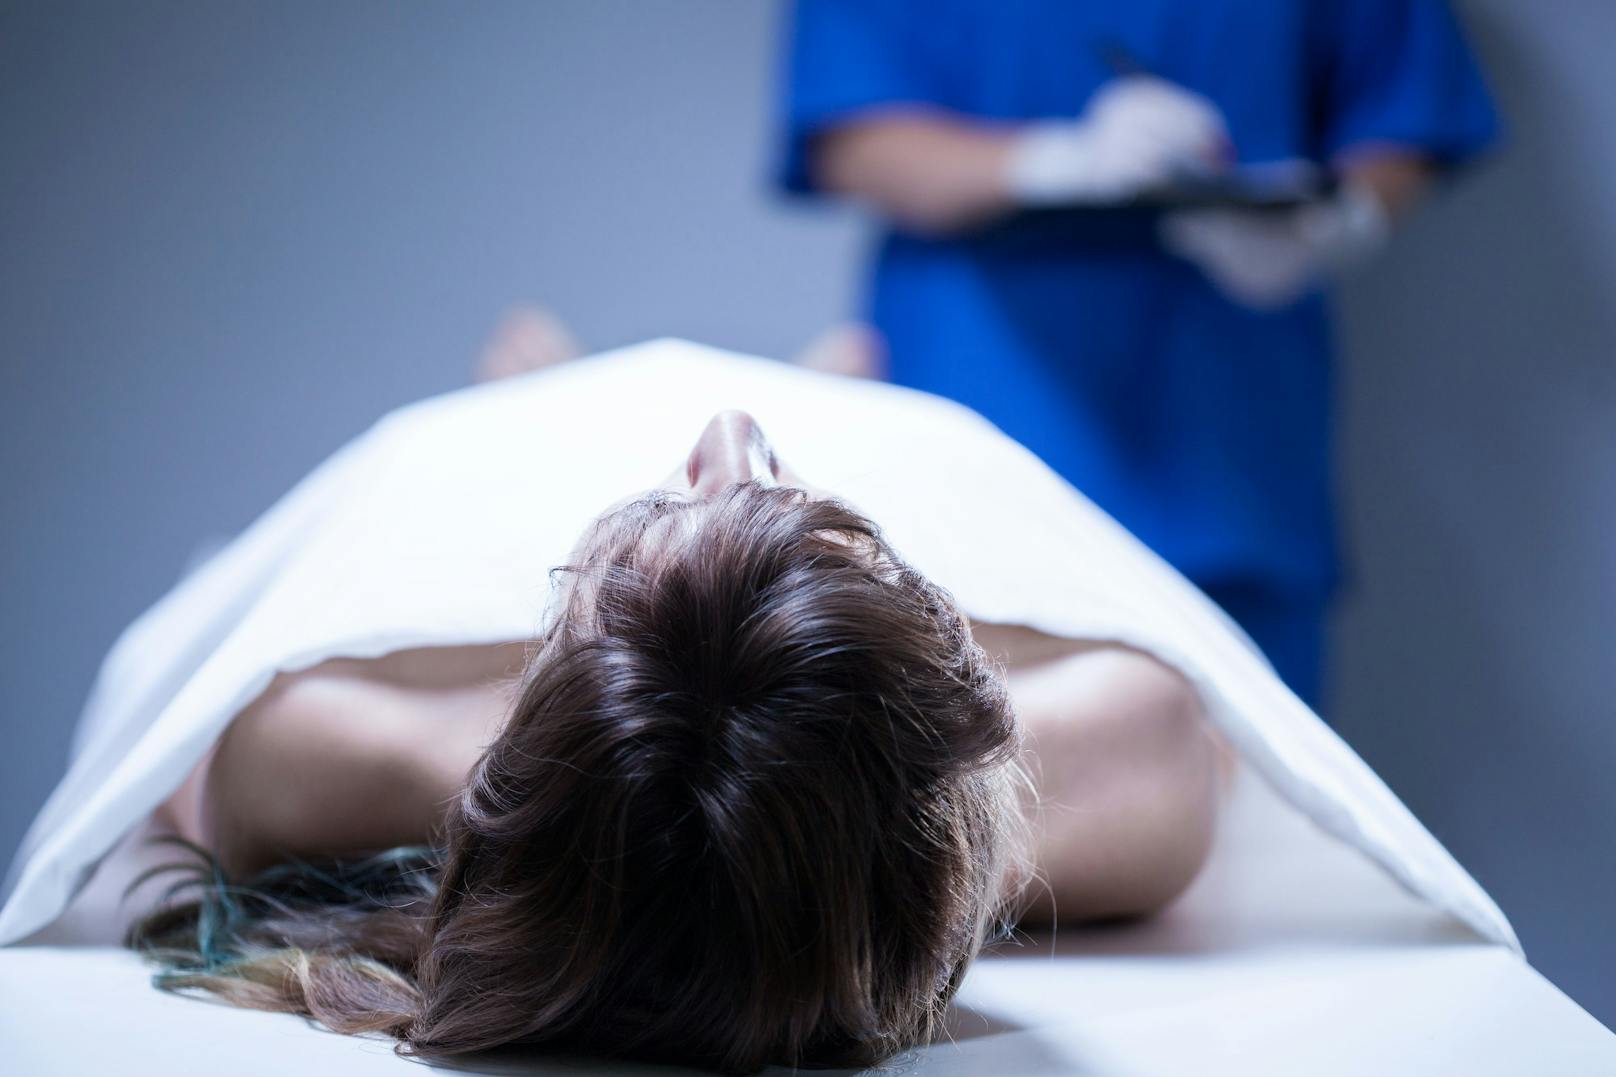 Tote Frau zu dick, Anatomie lehnt Körperspende ab